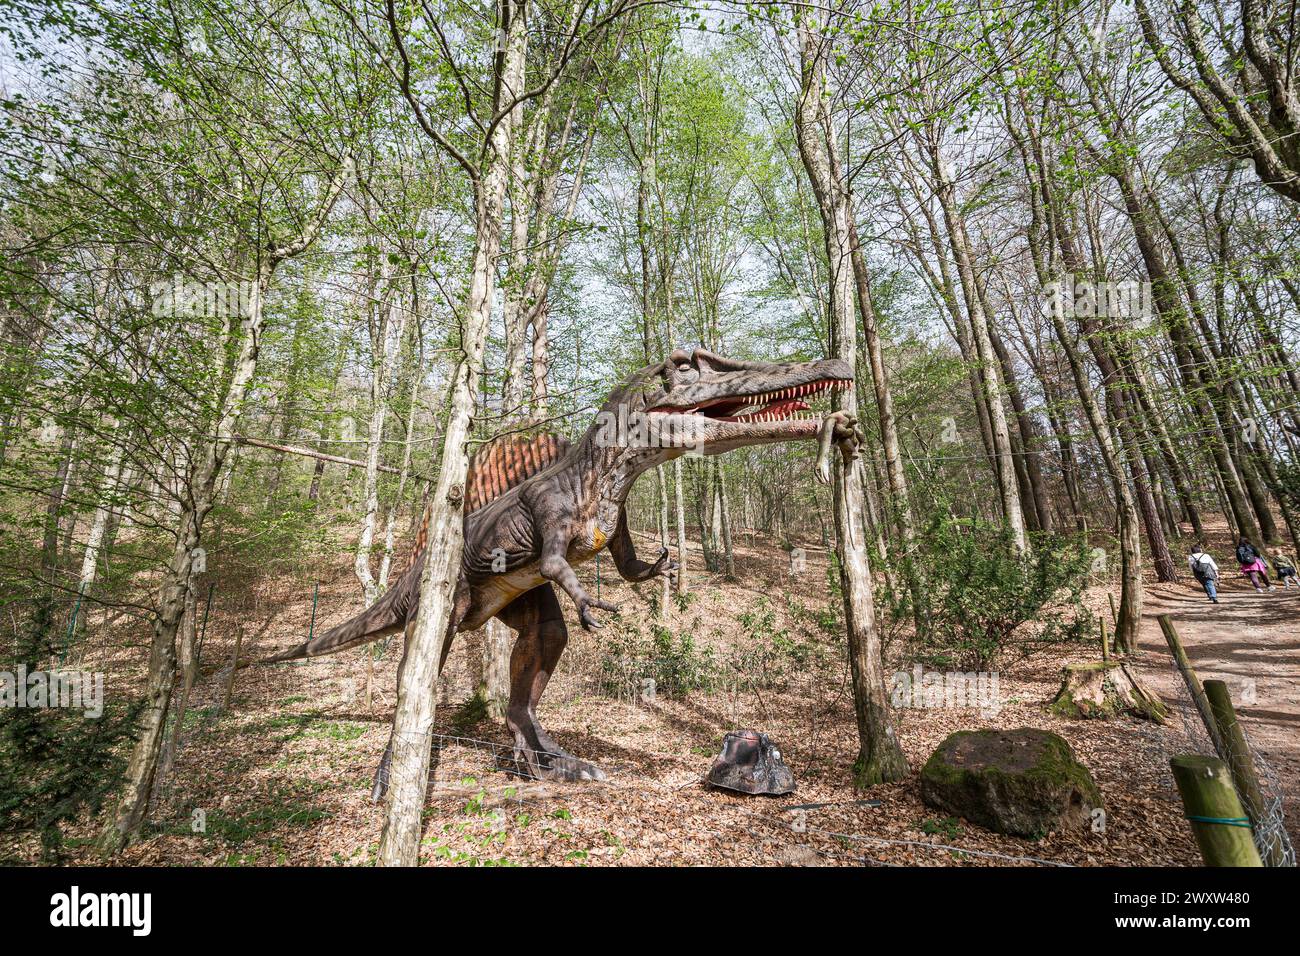 Ein Spinosaurus im Wildtierwald, ein Dinosaurier-Nachbau in der Natur Stockfoto